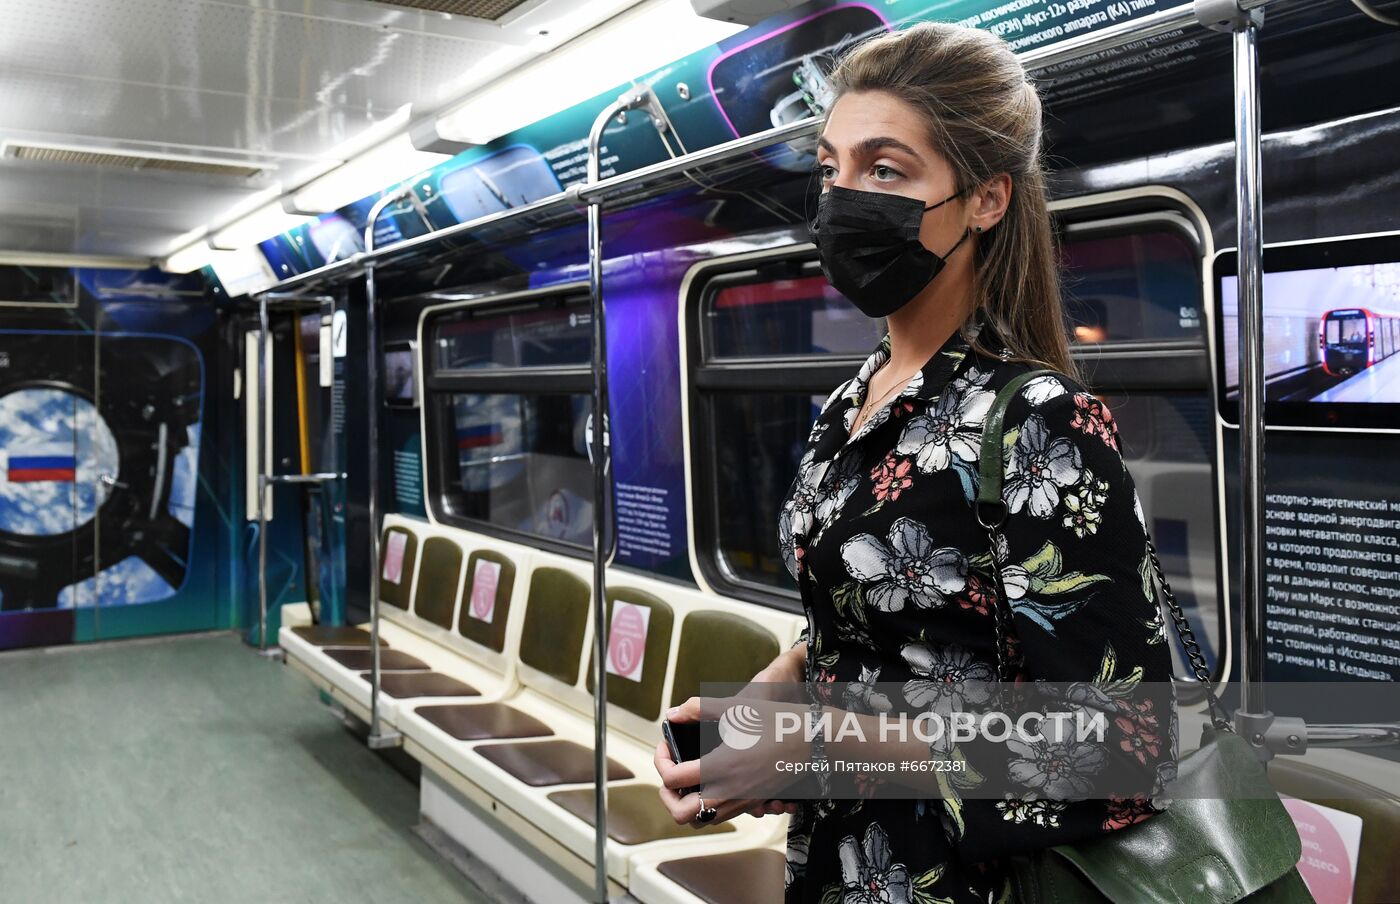 Запуск нового тематического поезда метрополитена "Моспром - Космический"